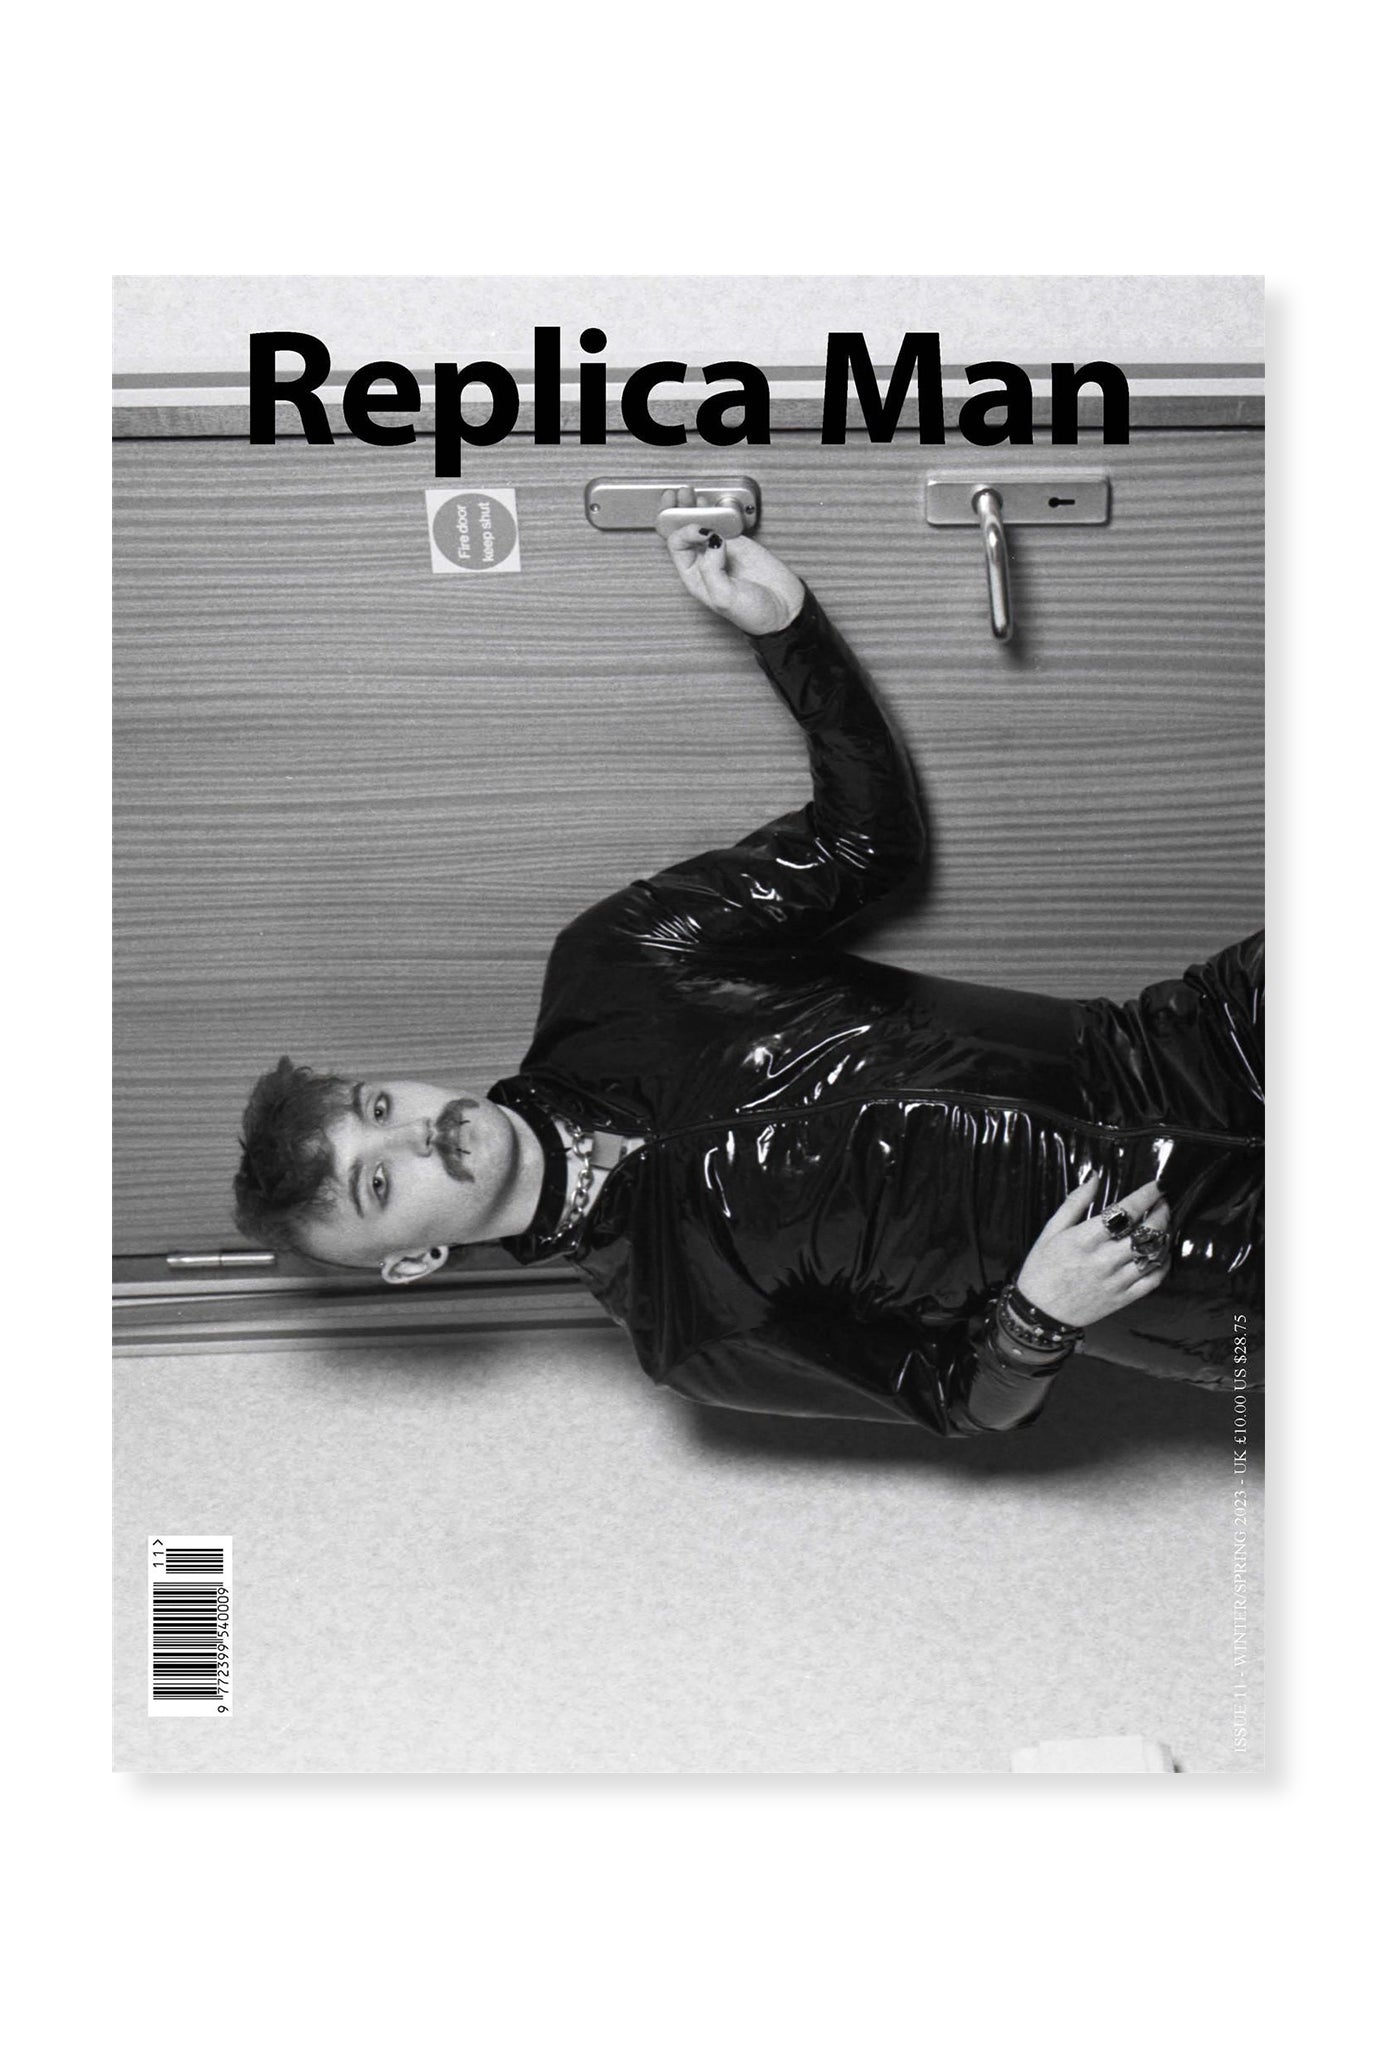 Replica, Issue 11